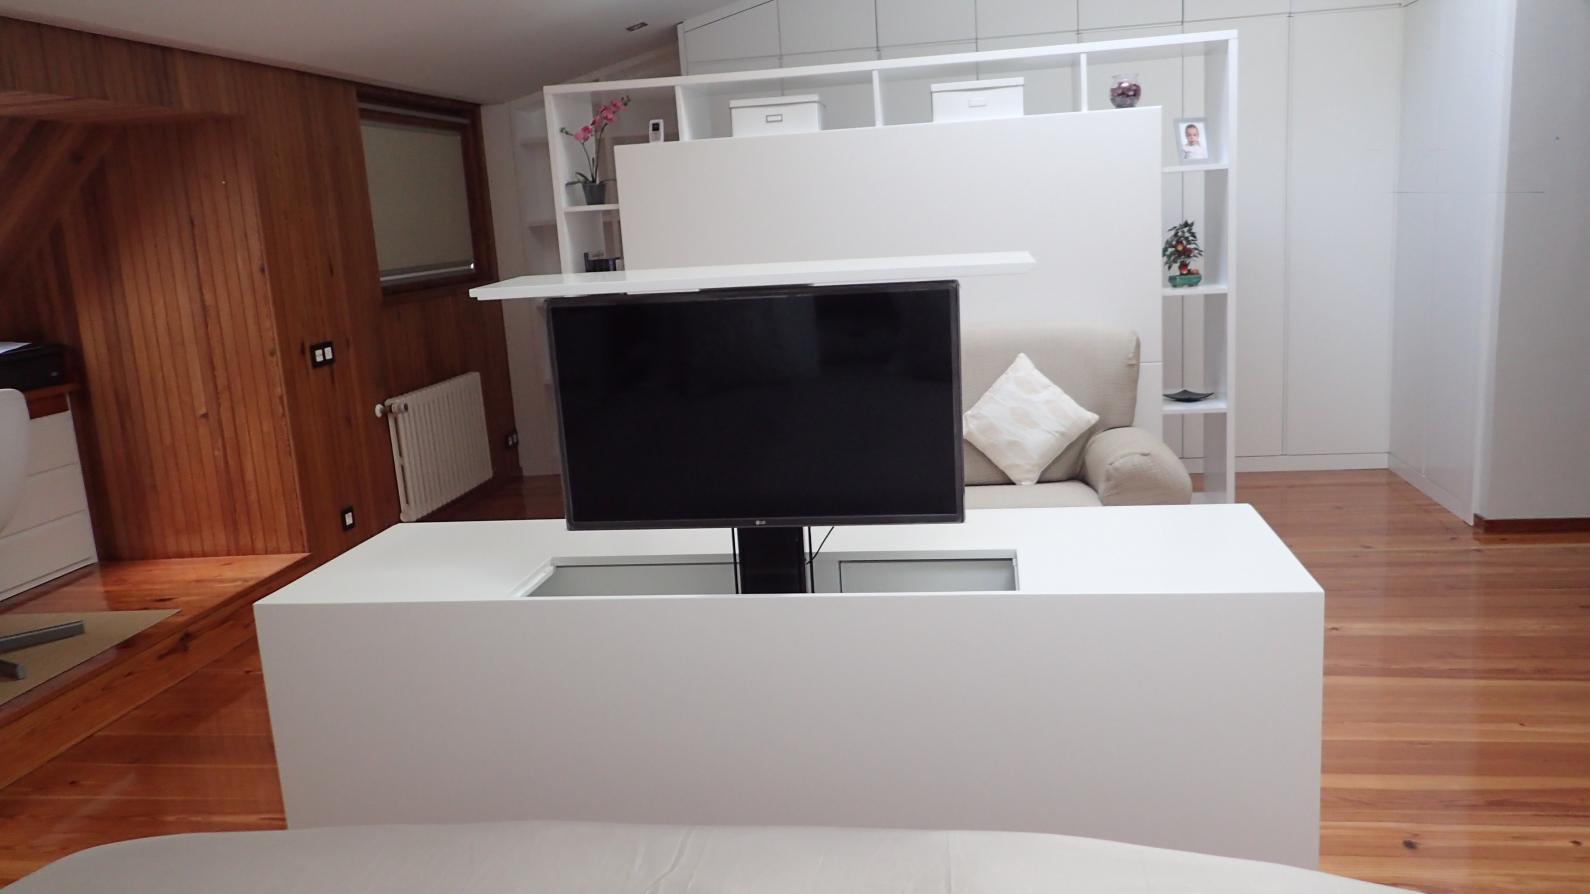 Mueble aparador con cajones y tv oculta giratoria. 3.200€ Aprox
